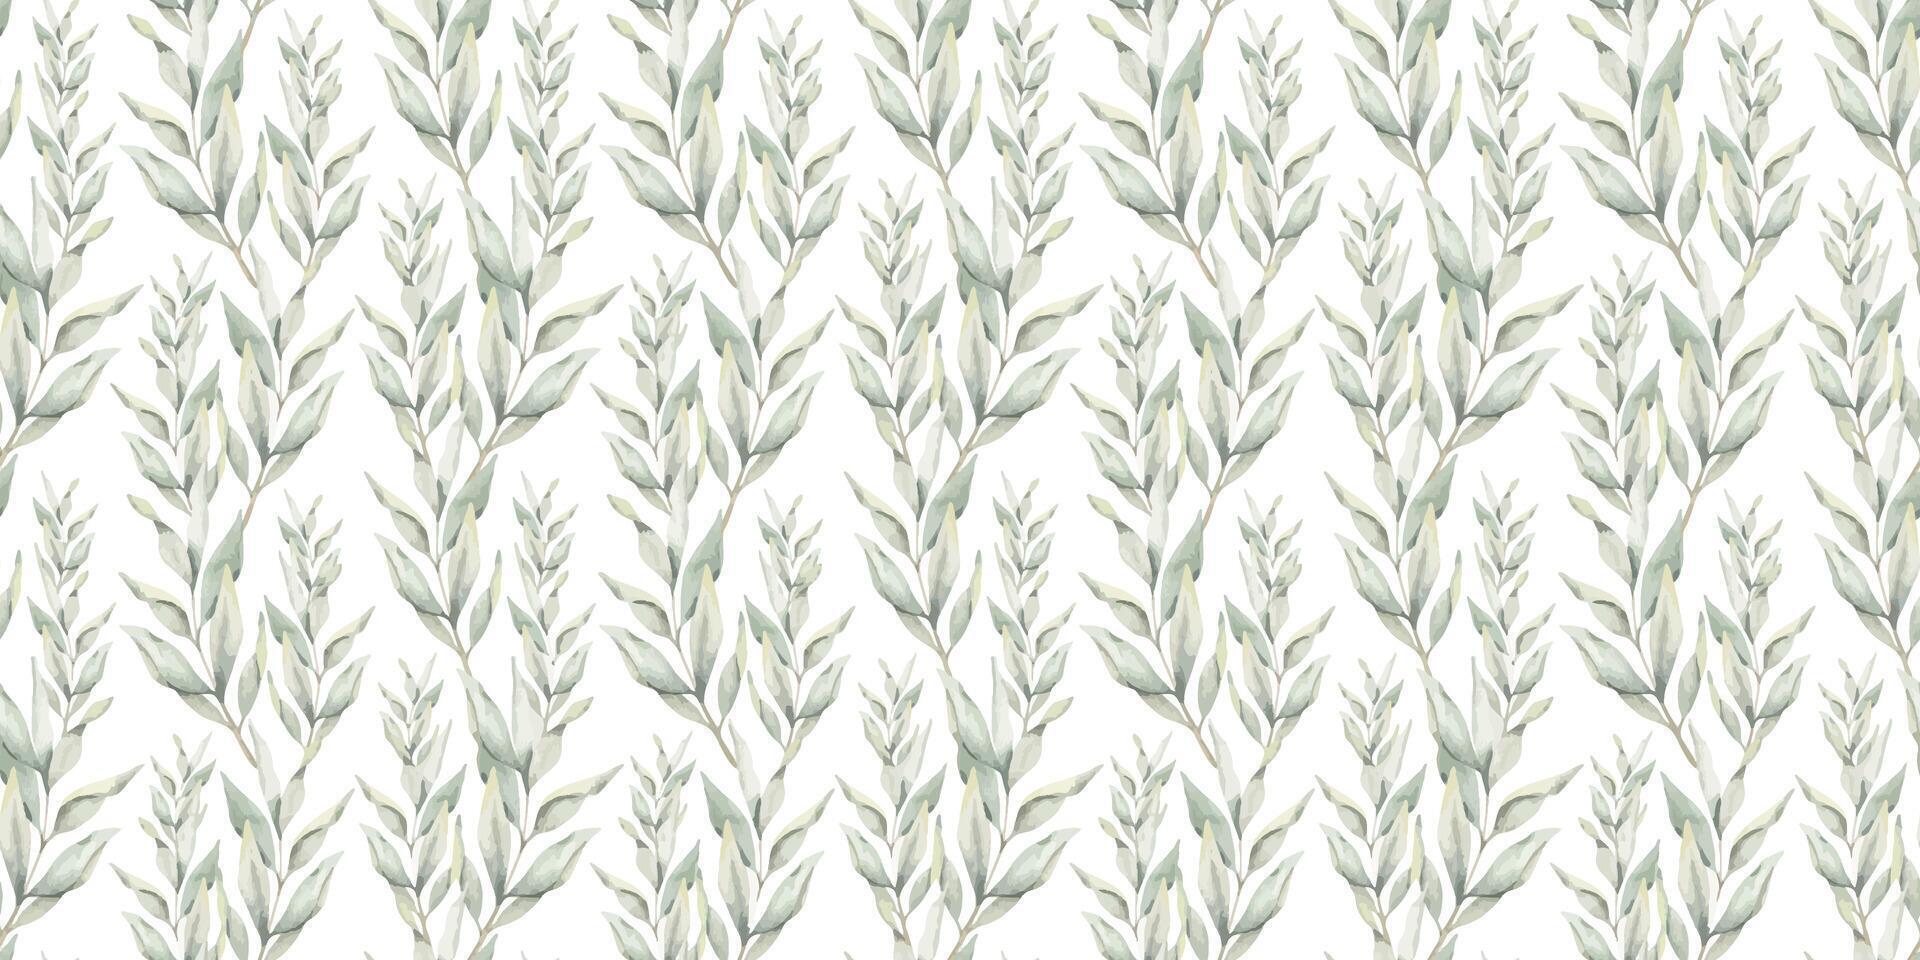 Grün Geäst mit Blätter. Hand gezeichnet Aquarell nahtlos Muster von Zweige. Sommer- Blumen- Hintergrund zum Hochzeit Design, Textilien, Verpackung Papier, Scrapbooking vektor